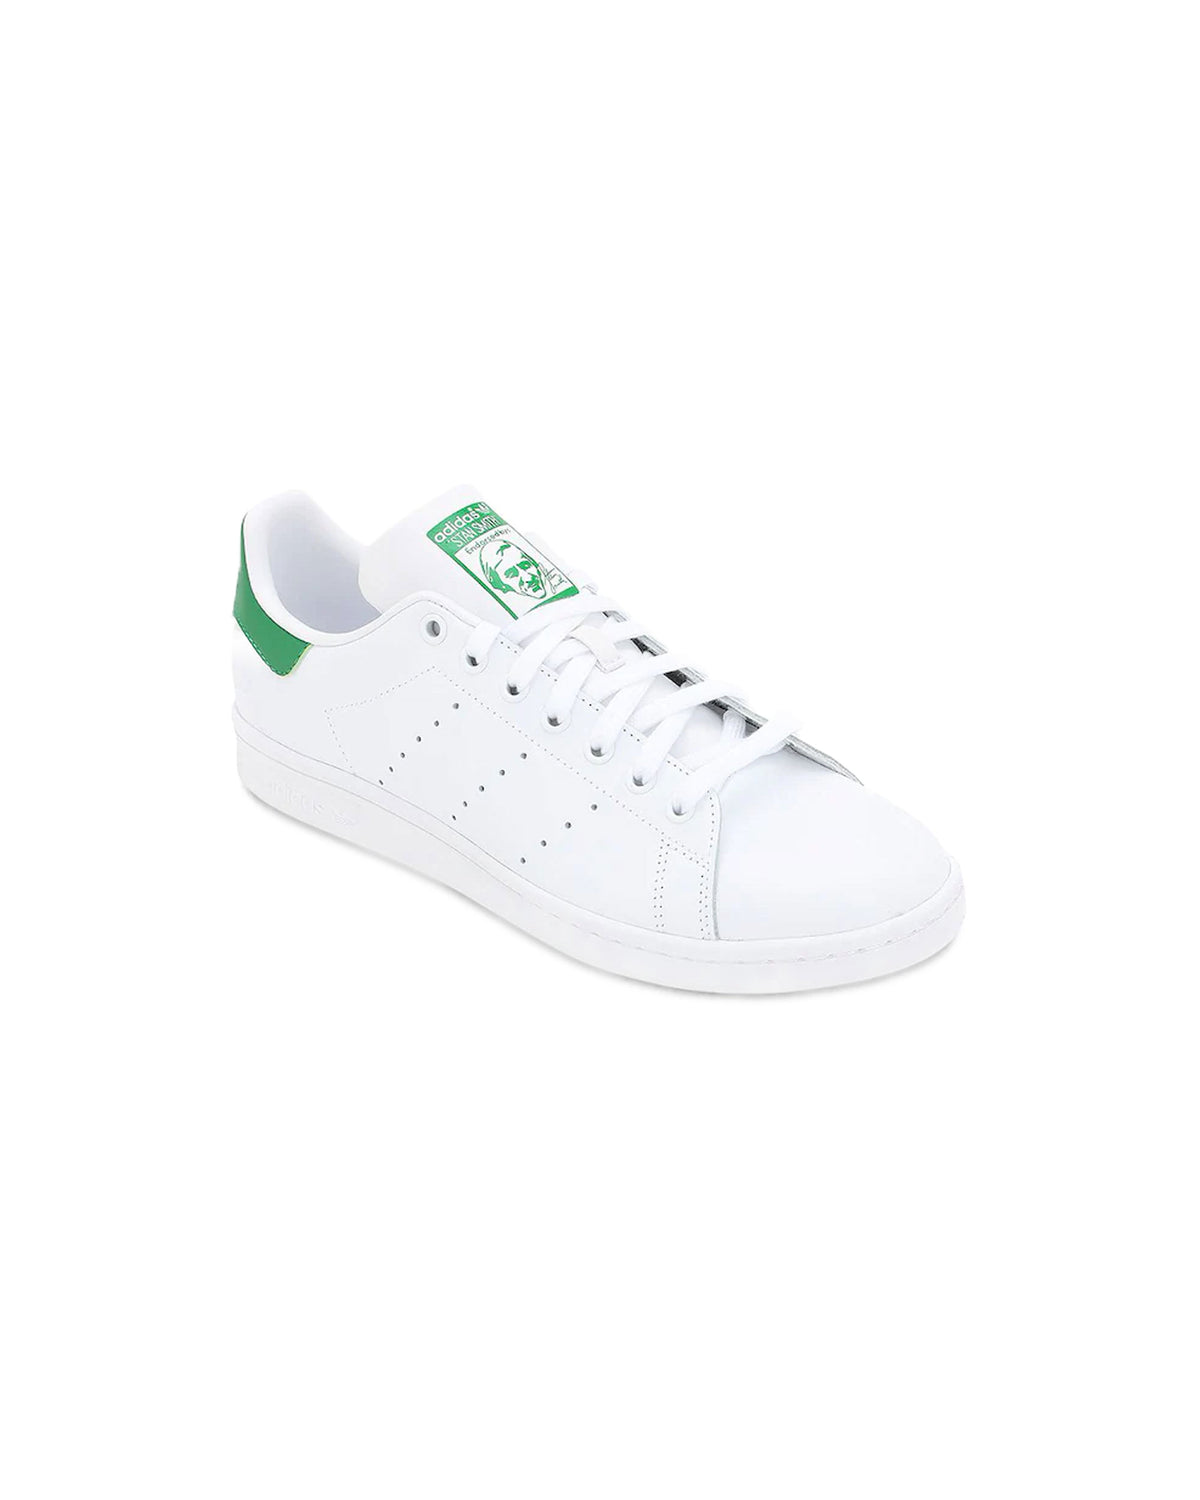 Adidas Stan Smith C White Green